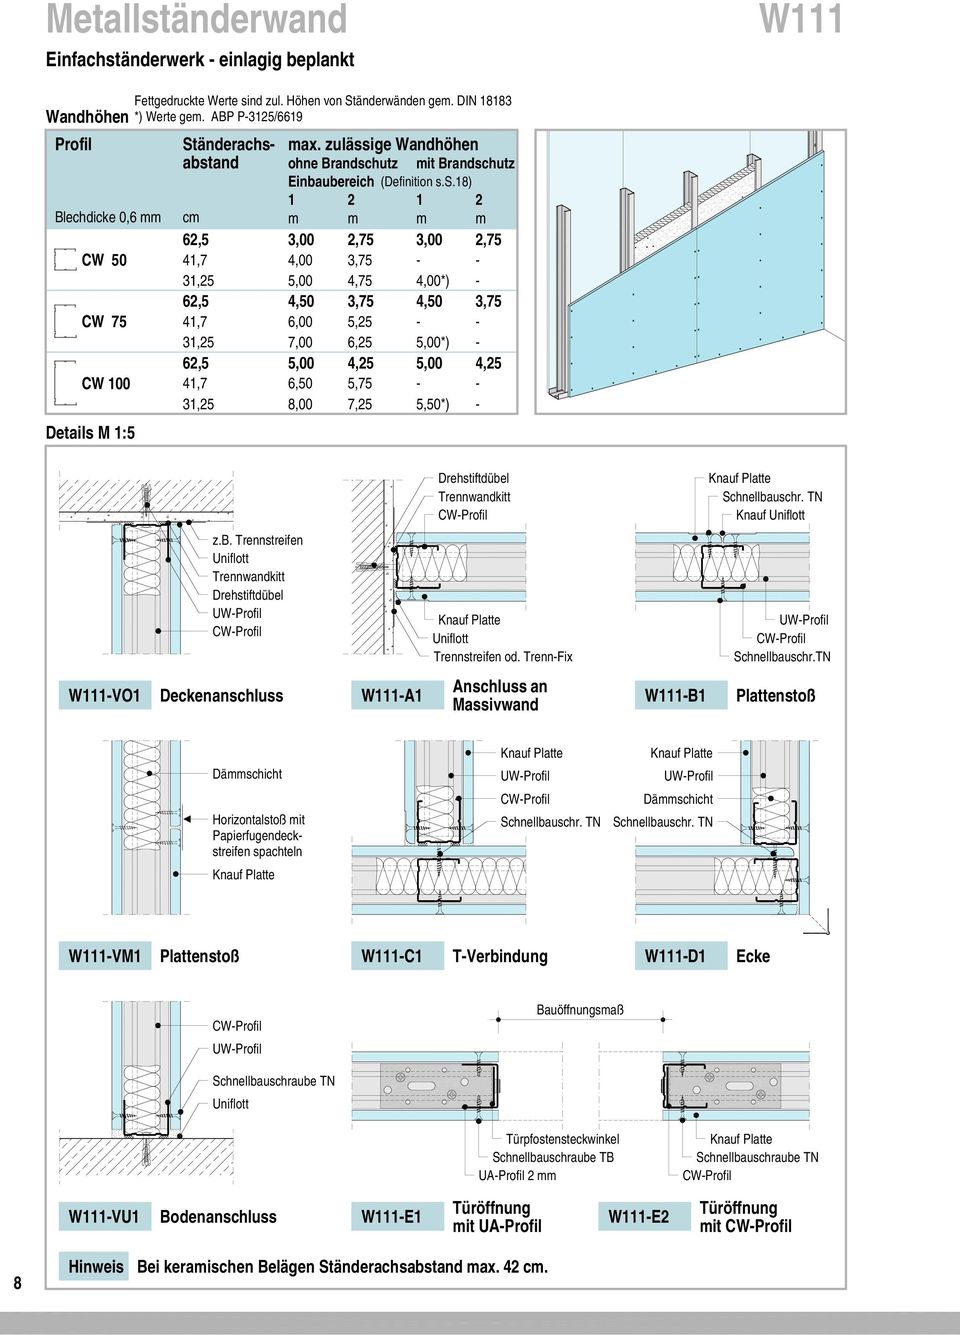 änderwerk einlagig beplankt 1 Wandhöhen Profil Ständerachs 